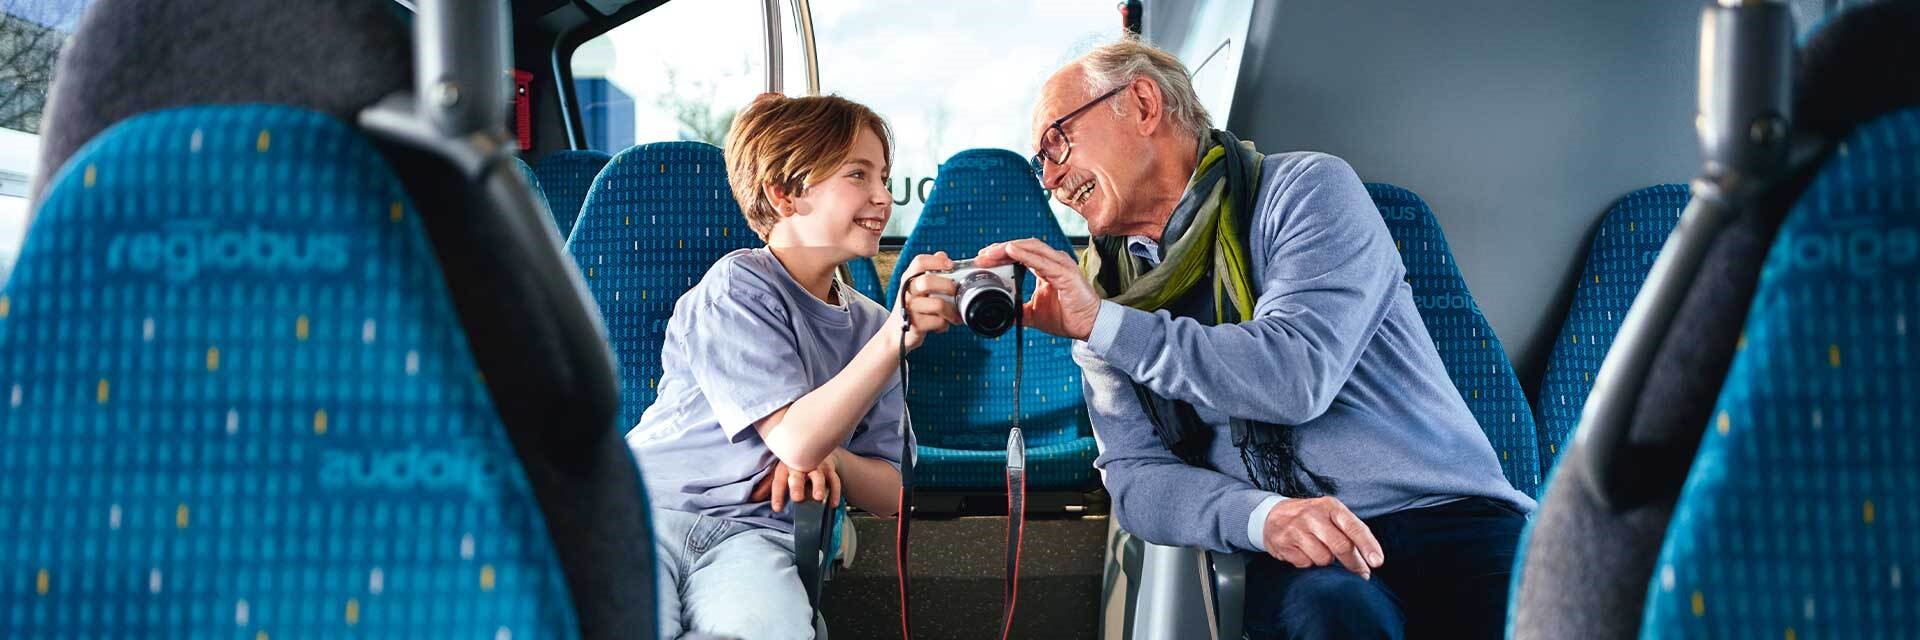 Coverbild des GVH journals 02.2023: Ein Großvater und sein Enkel sitzen in einem Bus und schauen sich gemeinsam Fotos auf einem Kameradisplay an.